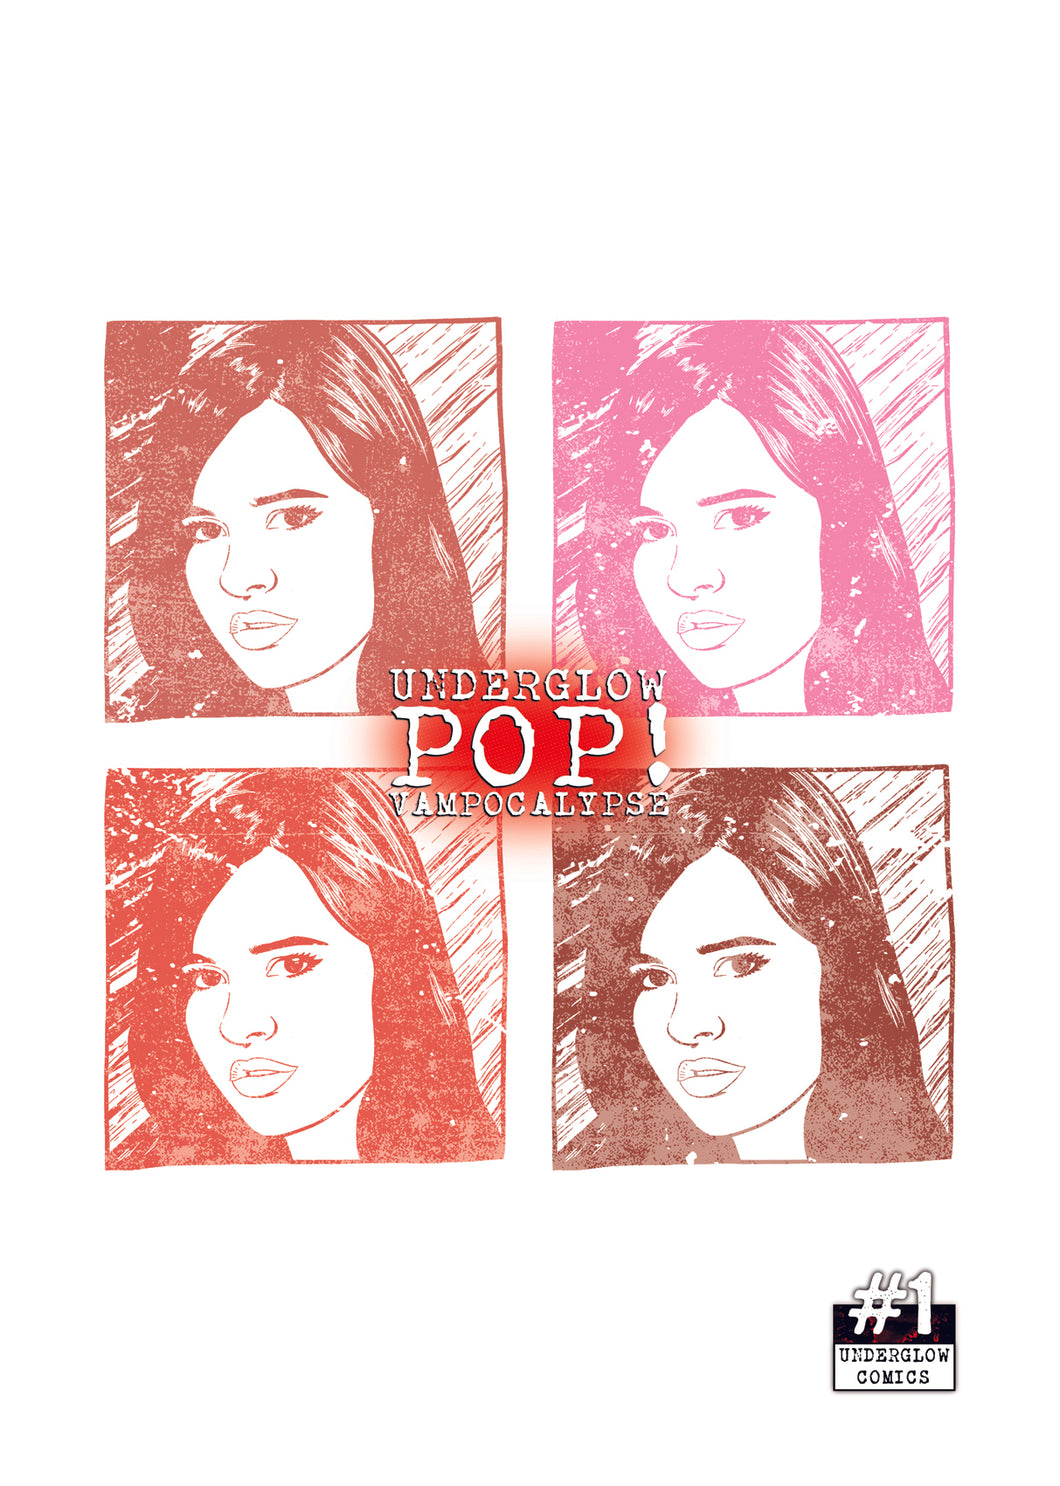 Underglow POP! Vampocalypse #1D - Rachel PopArt Variant